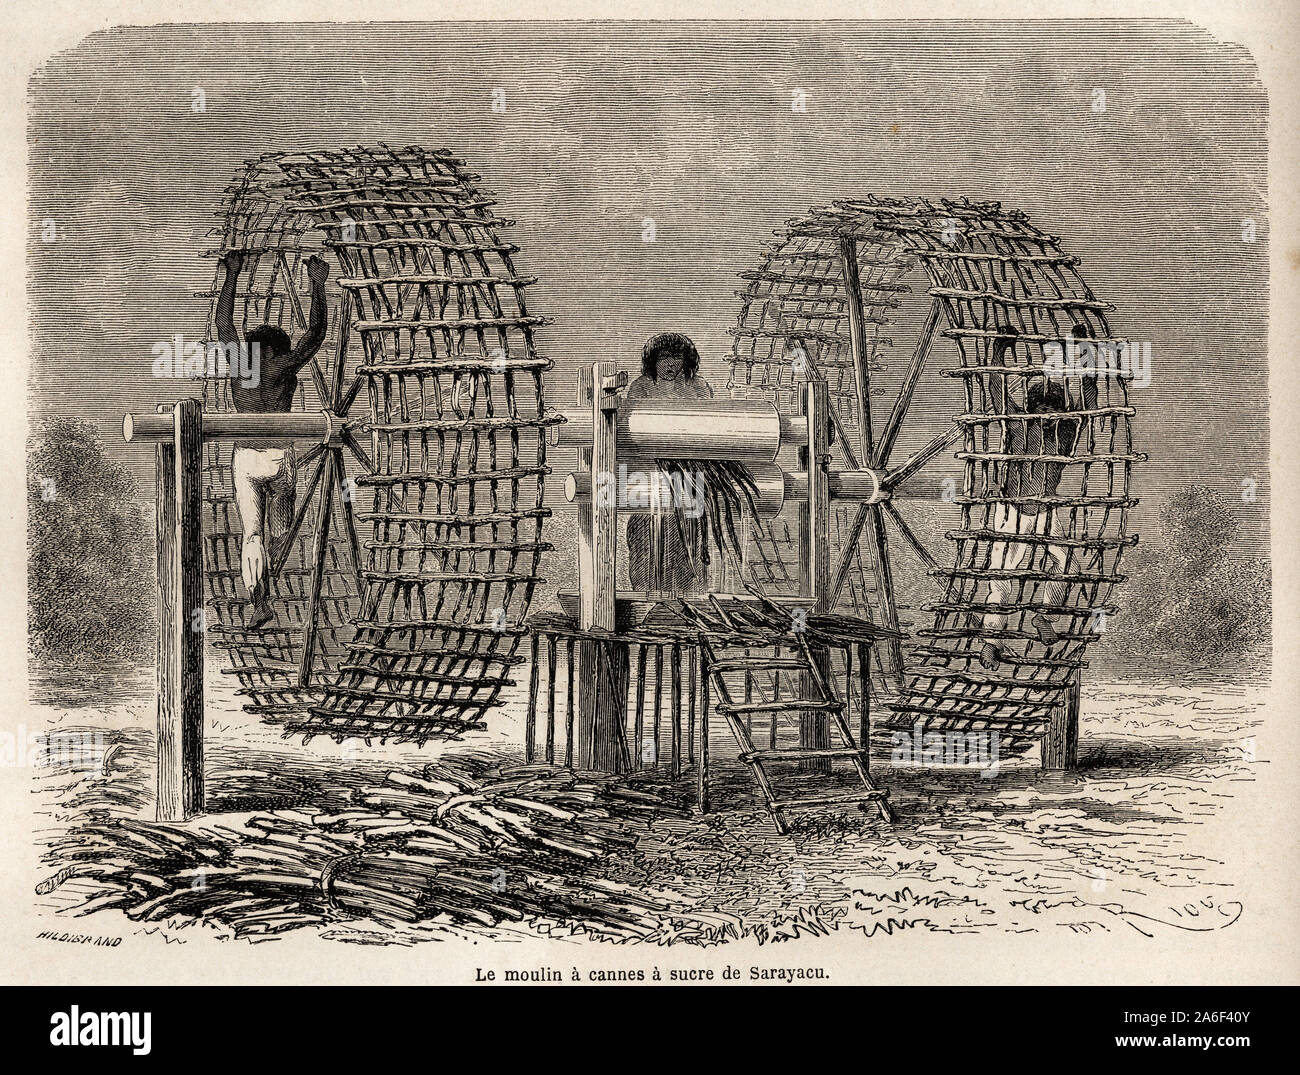 Le moulin-cage a broyer la canne a sucre de Sarayacu (Perou), dessin de Riou, pour illustrer le voyage de l'Ocean Pacifique a l'Ocean Atlantique, de 1 Stock Photo